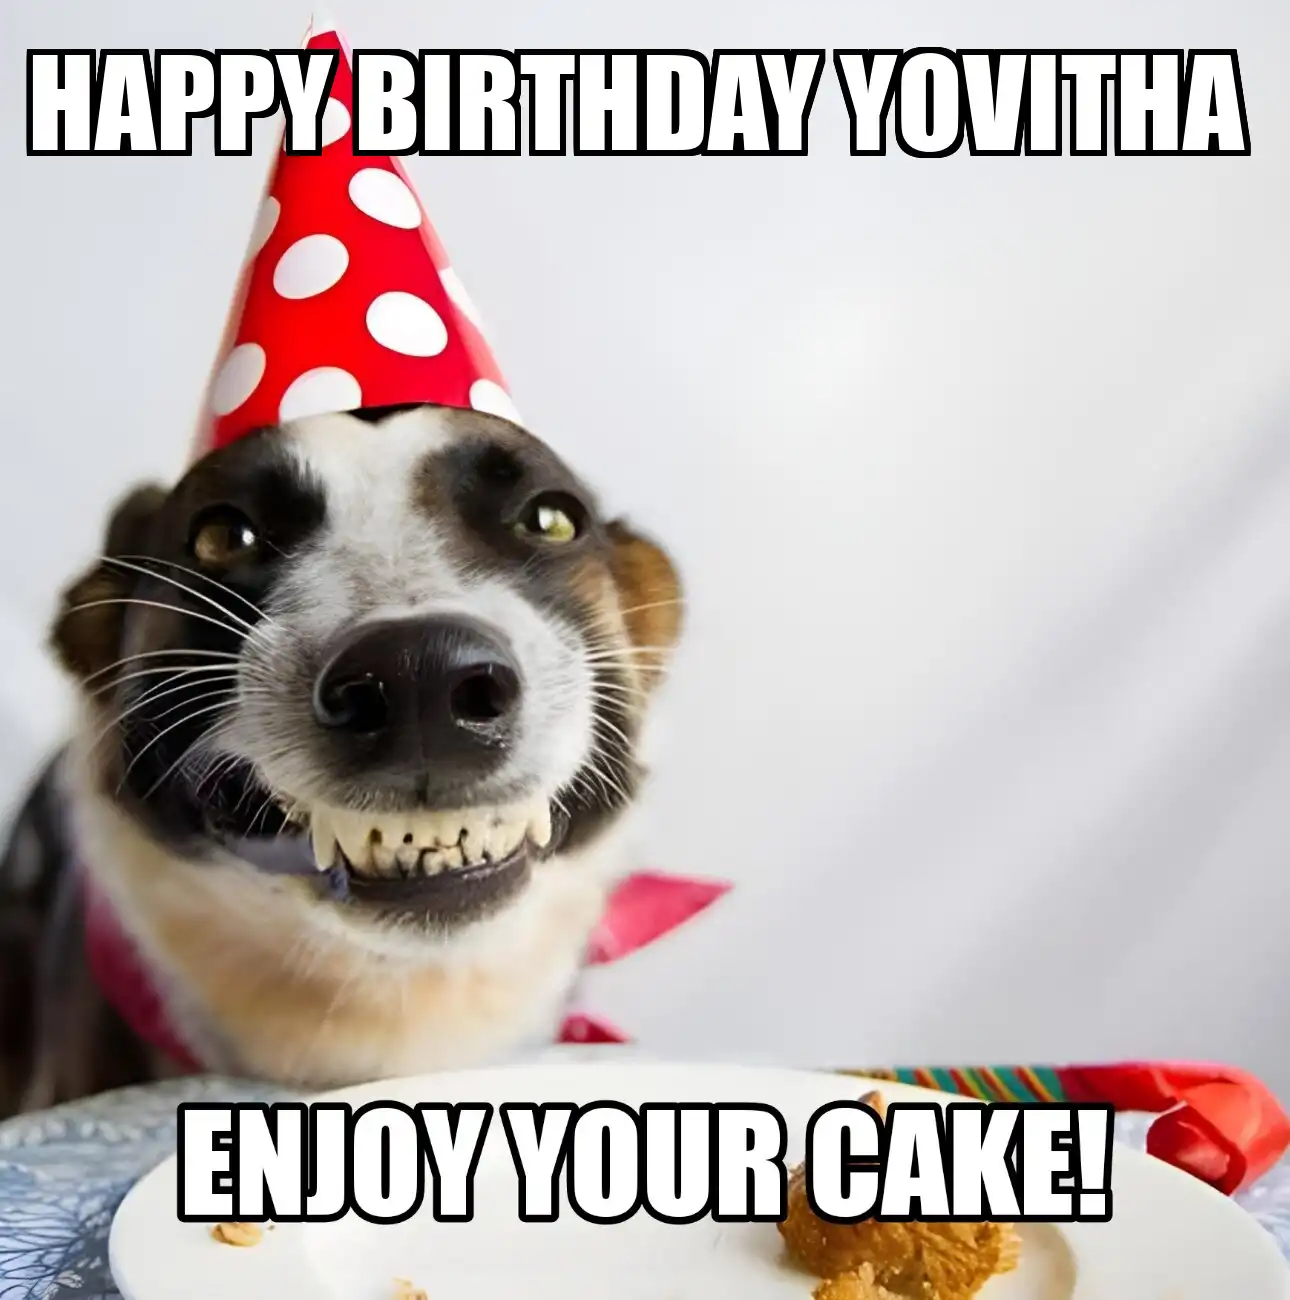 Happy Birthday Yovitha Enjoy Your Cake Dog Meme